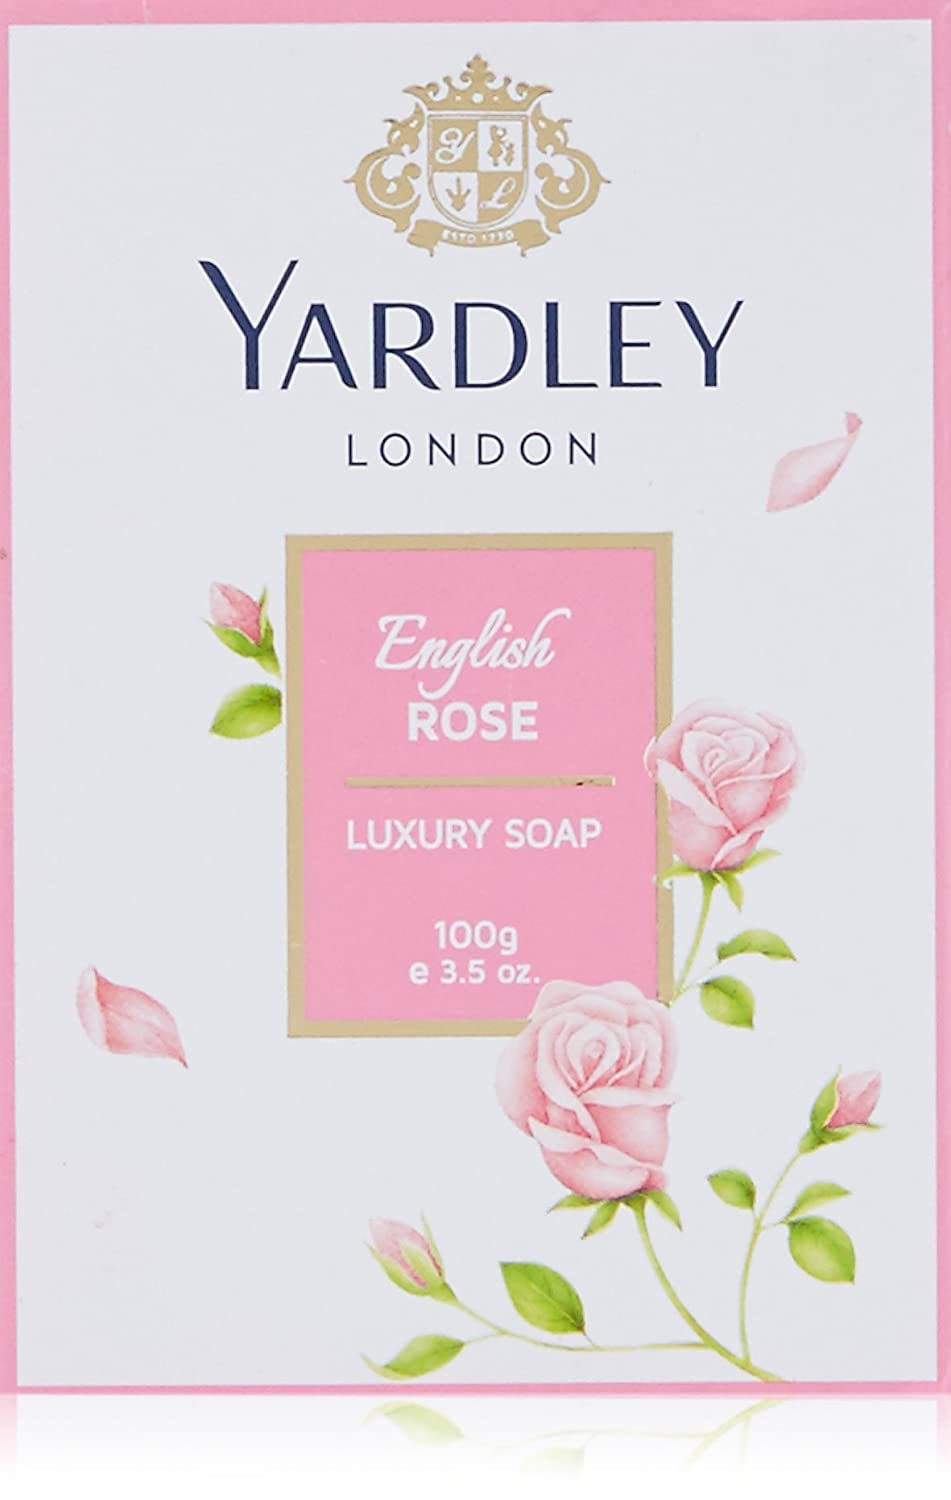 Yardley London - English Rose Luxury Soap 100g